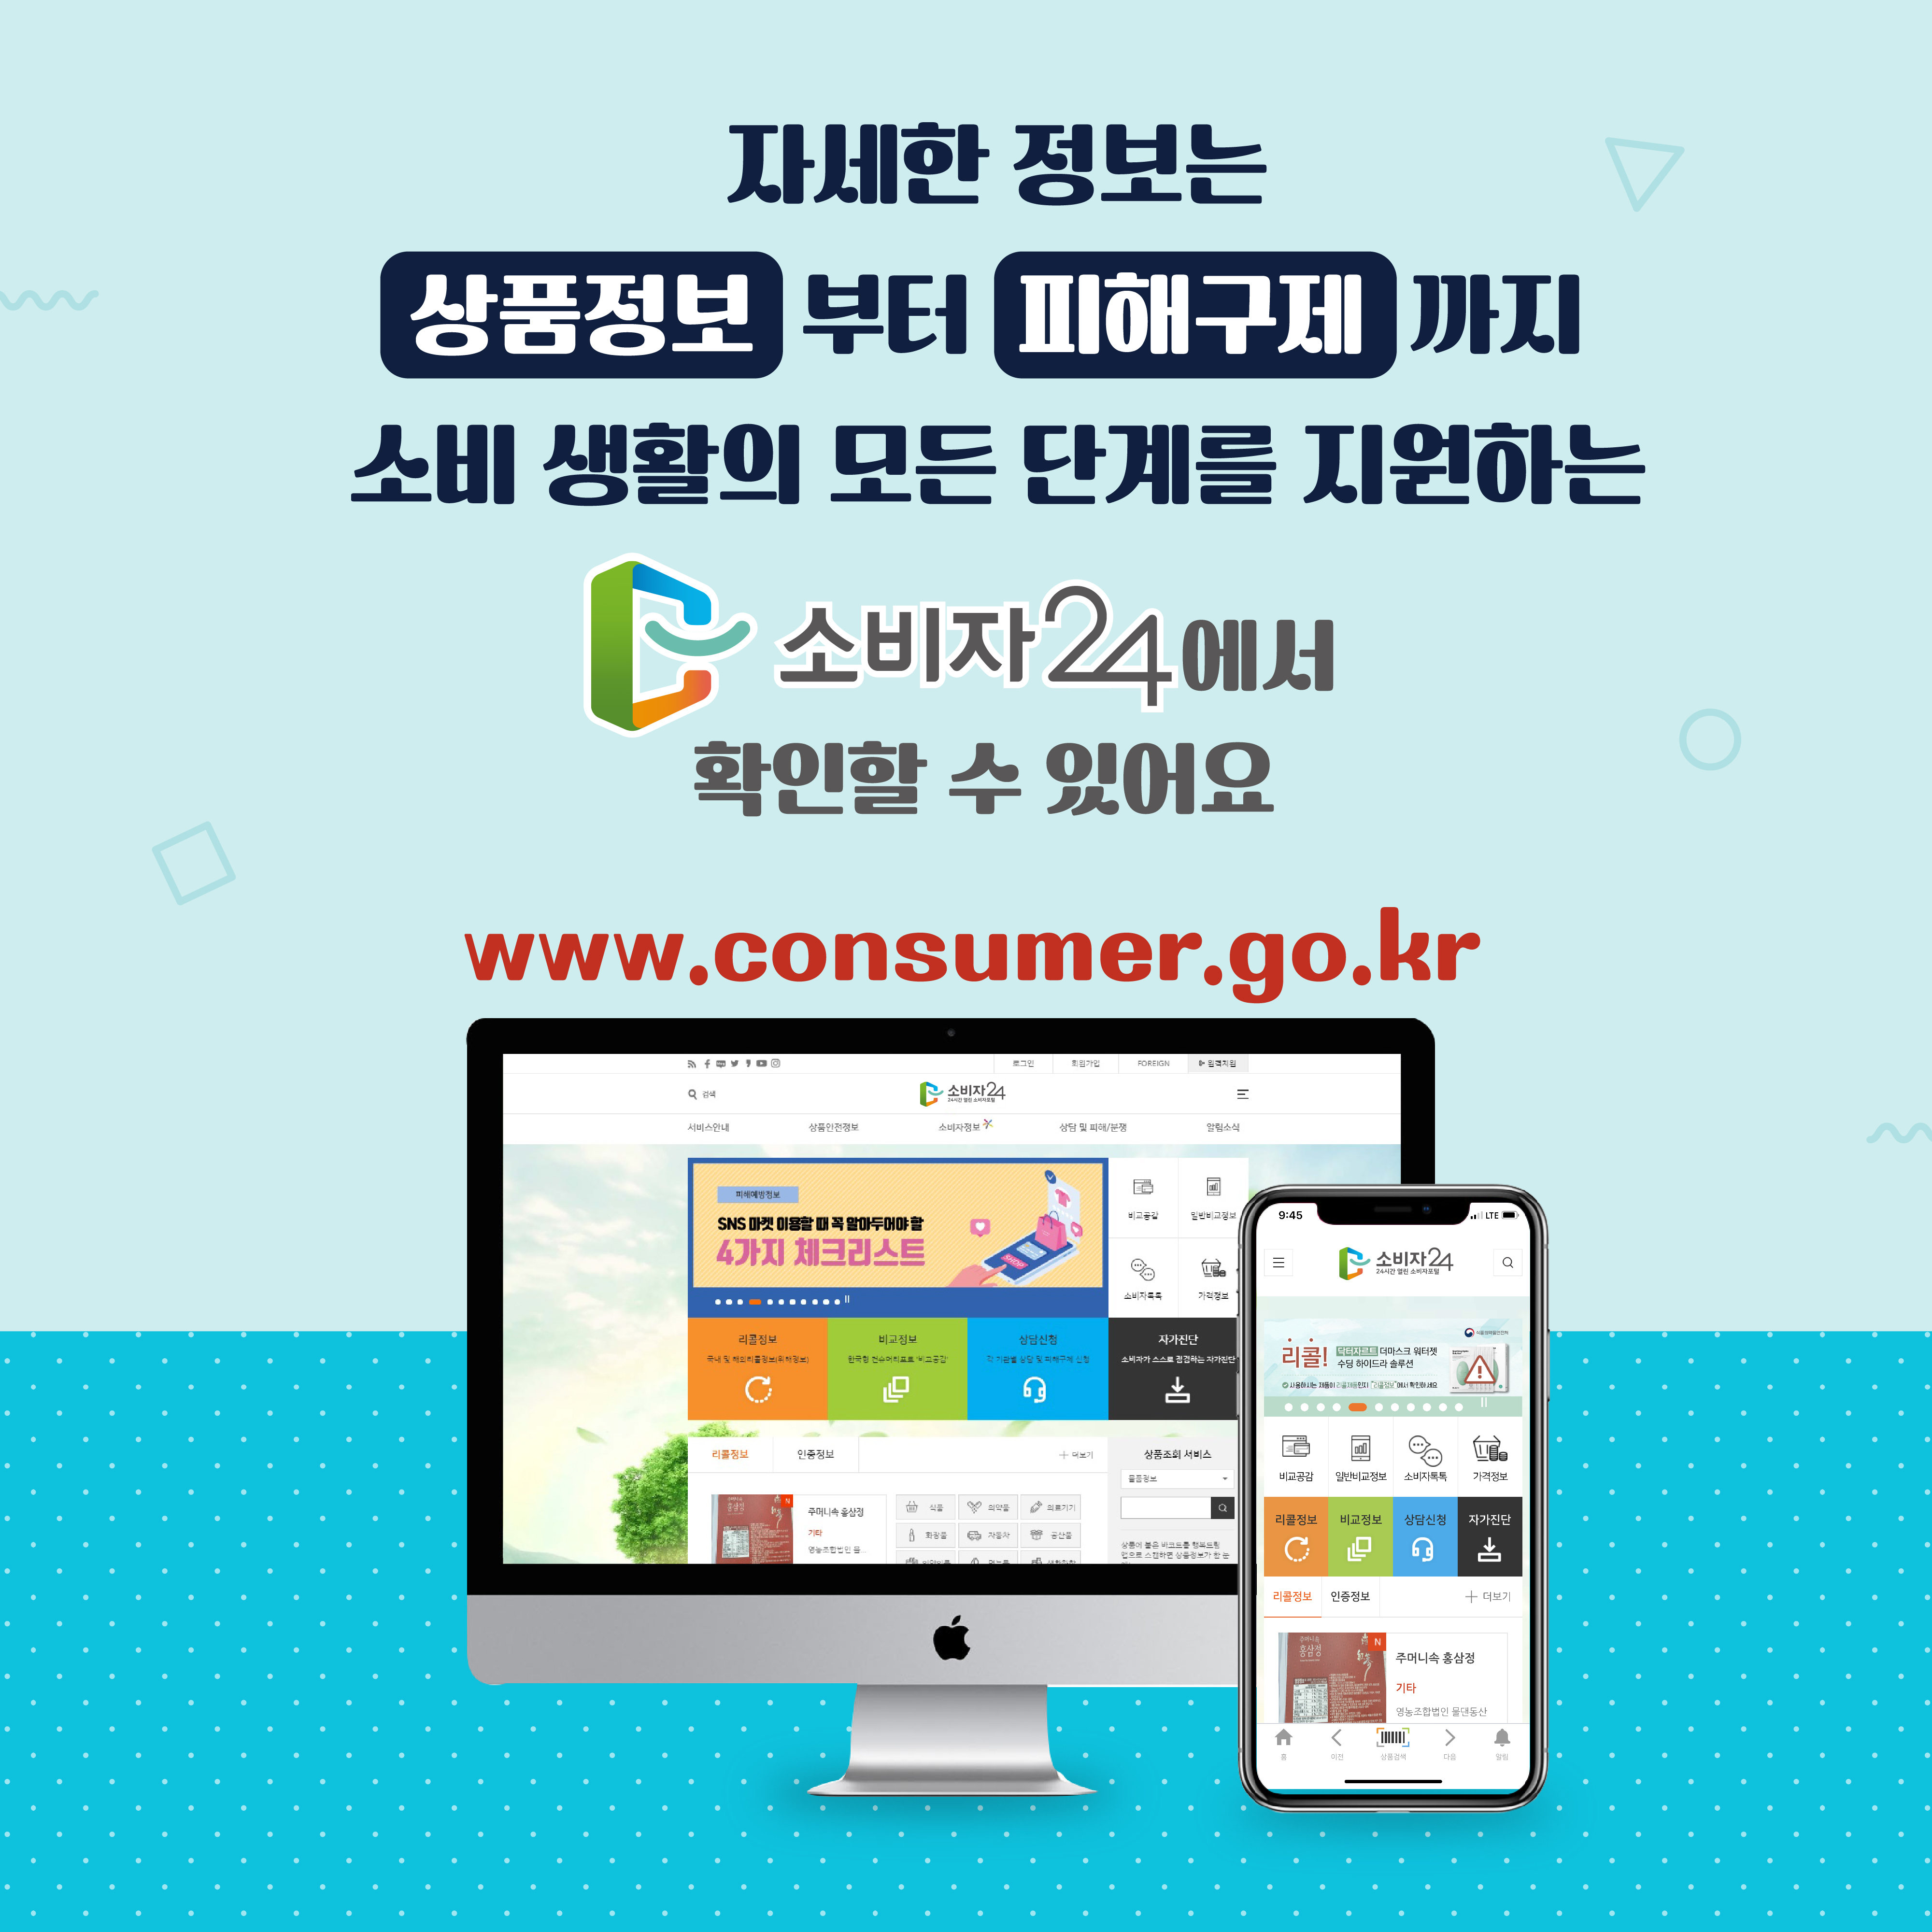 #7 자세한 정보는 상품정보부터 피해구제까지 소비 생활의 모든 단계를 지원하는 소비자24에서 확인할 수 있어요 www.consumer.go.kr